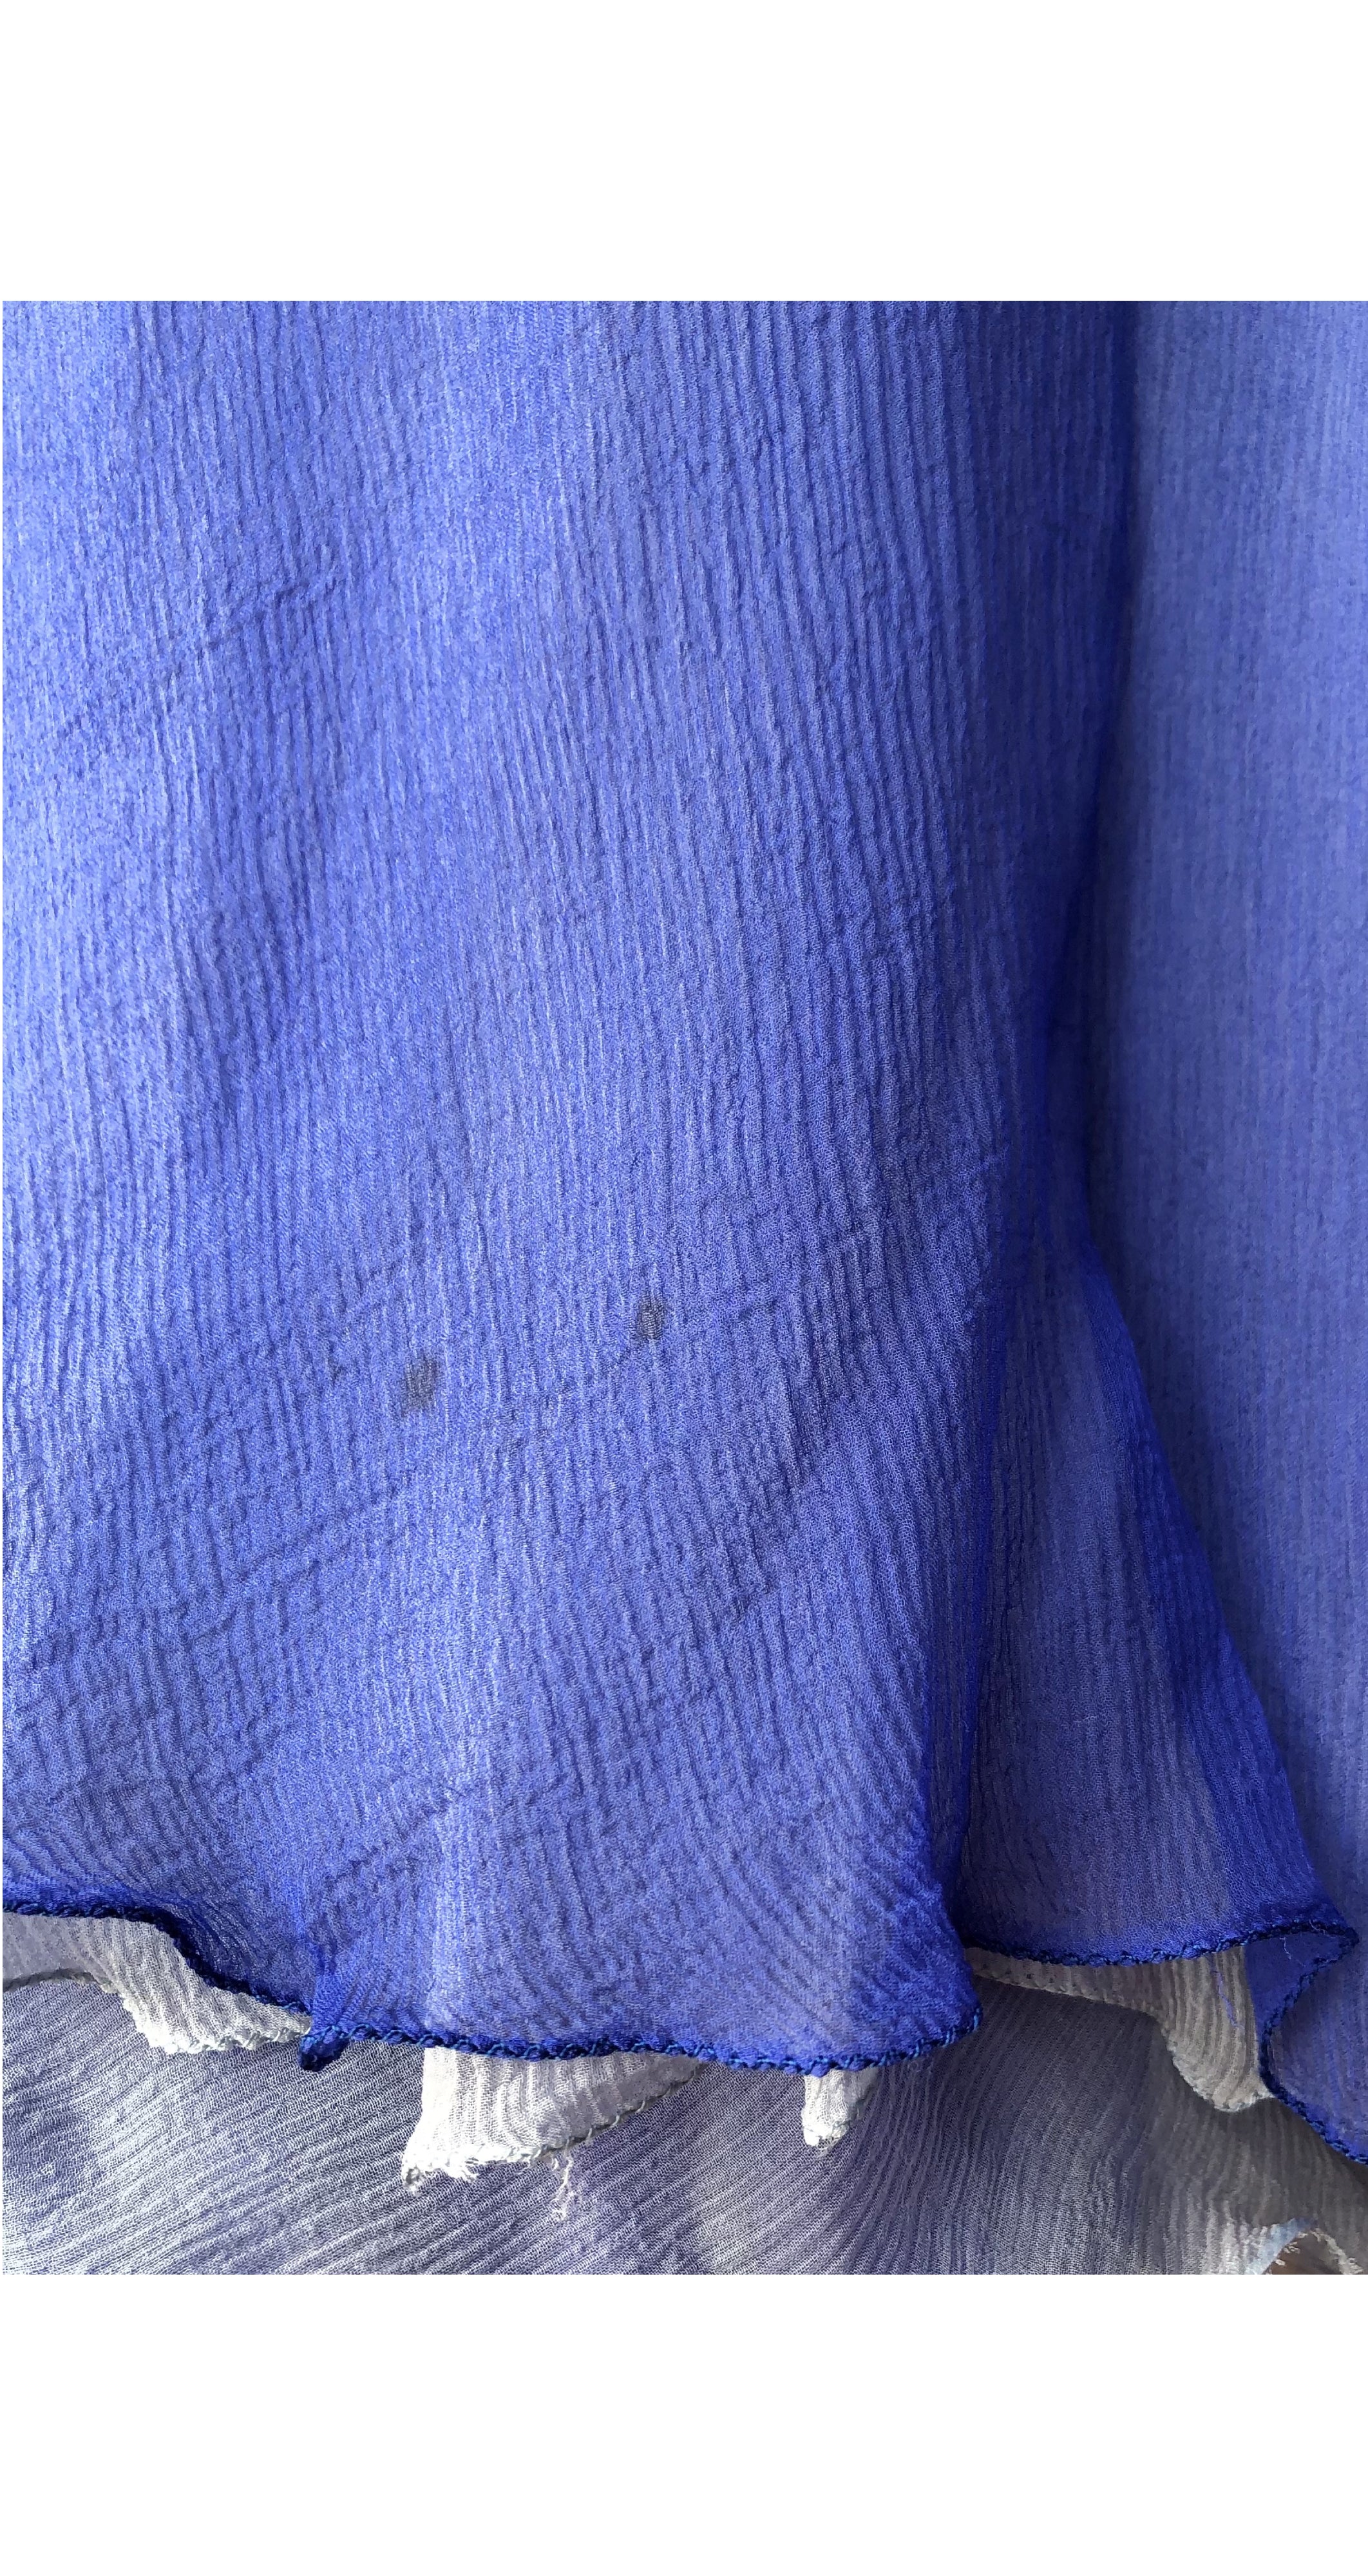 1980s Blue Silk Chiffon Draped Strapless Dress